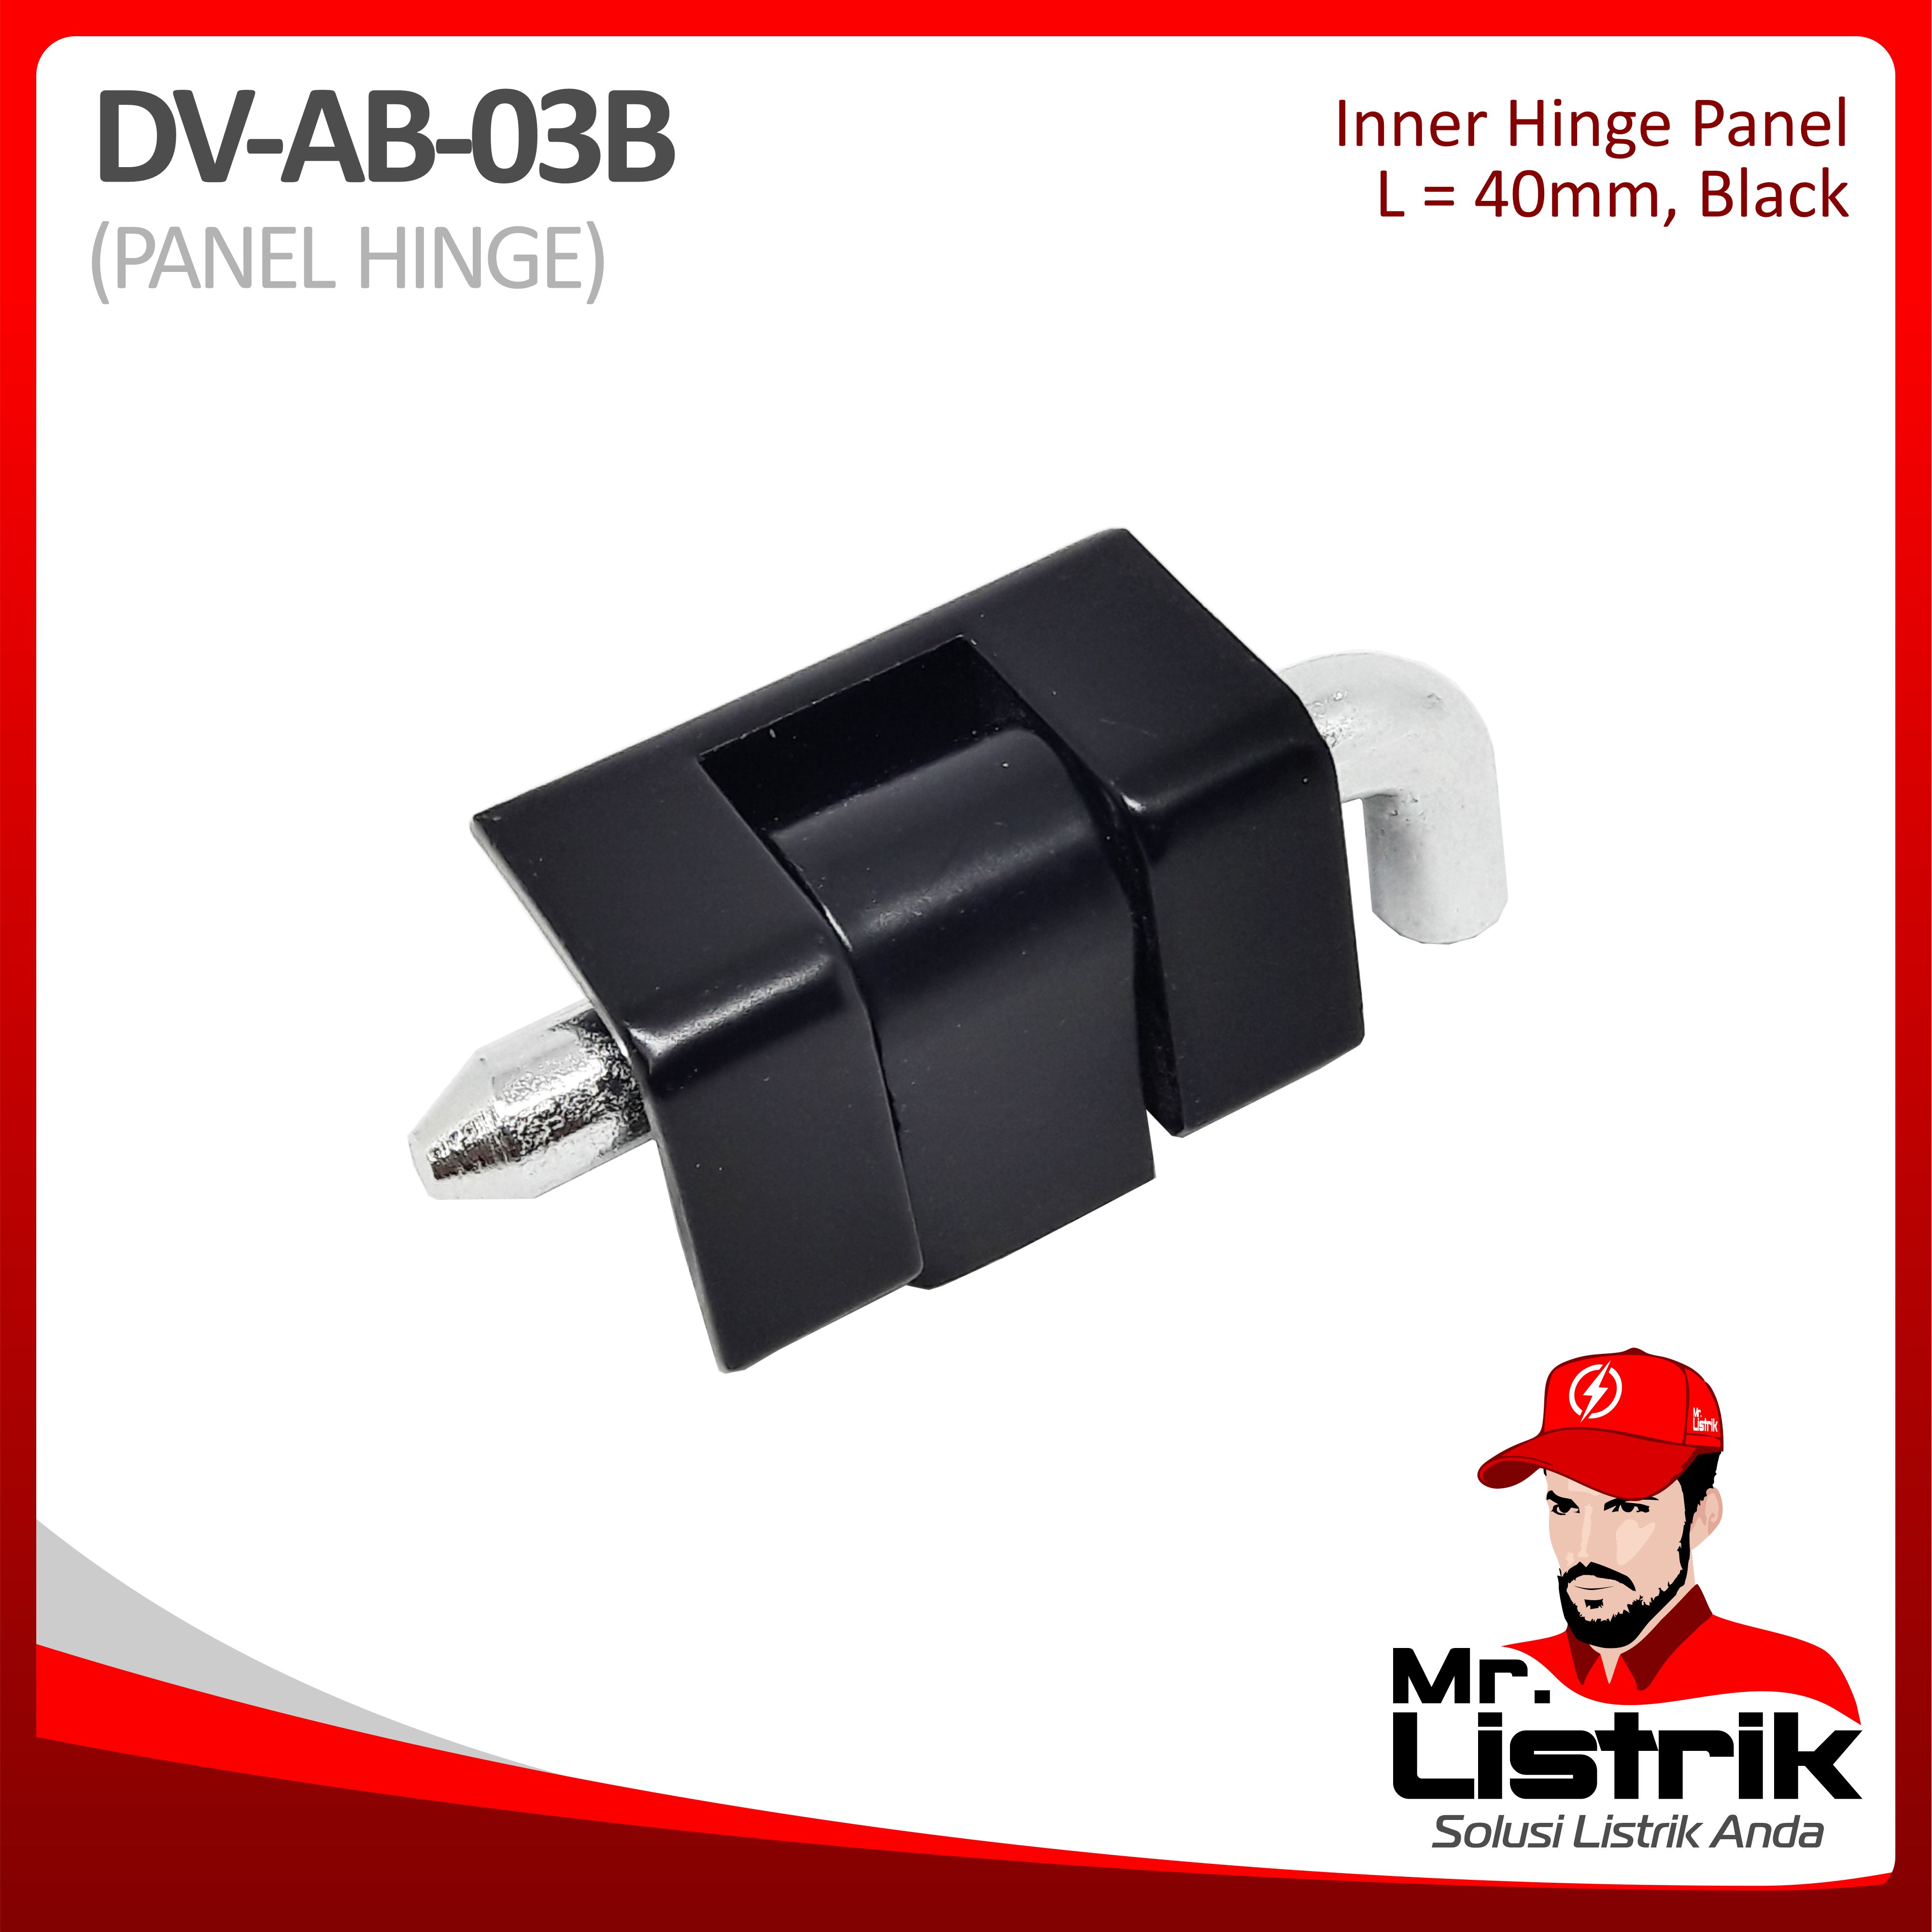 Inner Hinge Panel 40mm Black DV AB-03B